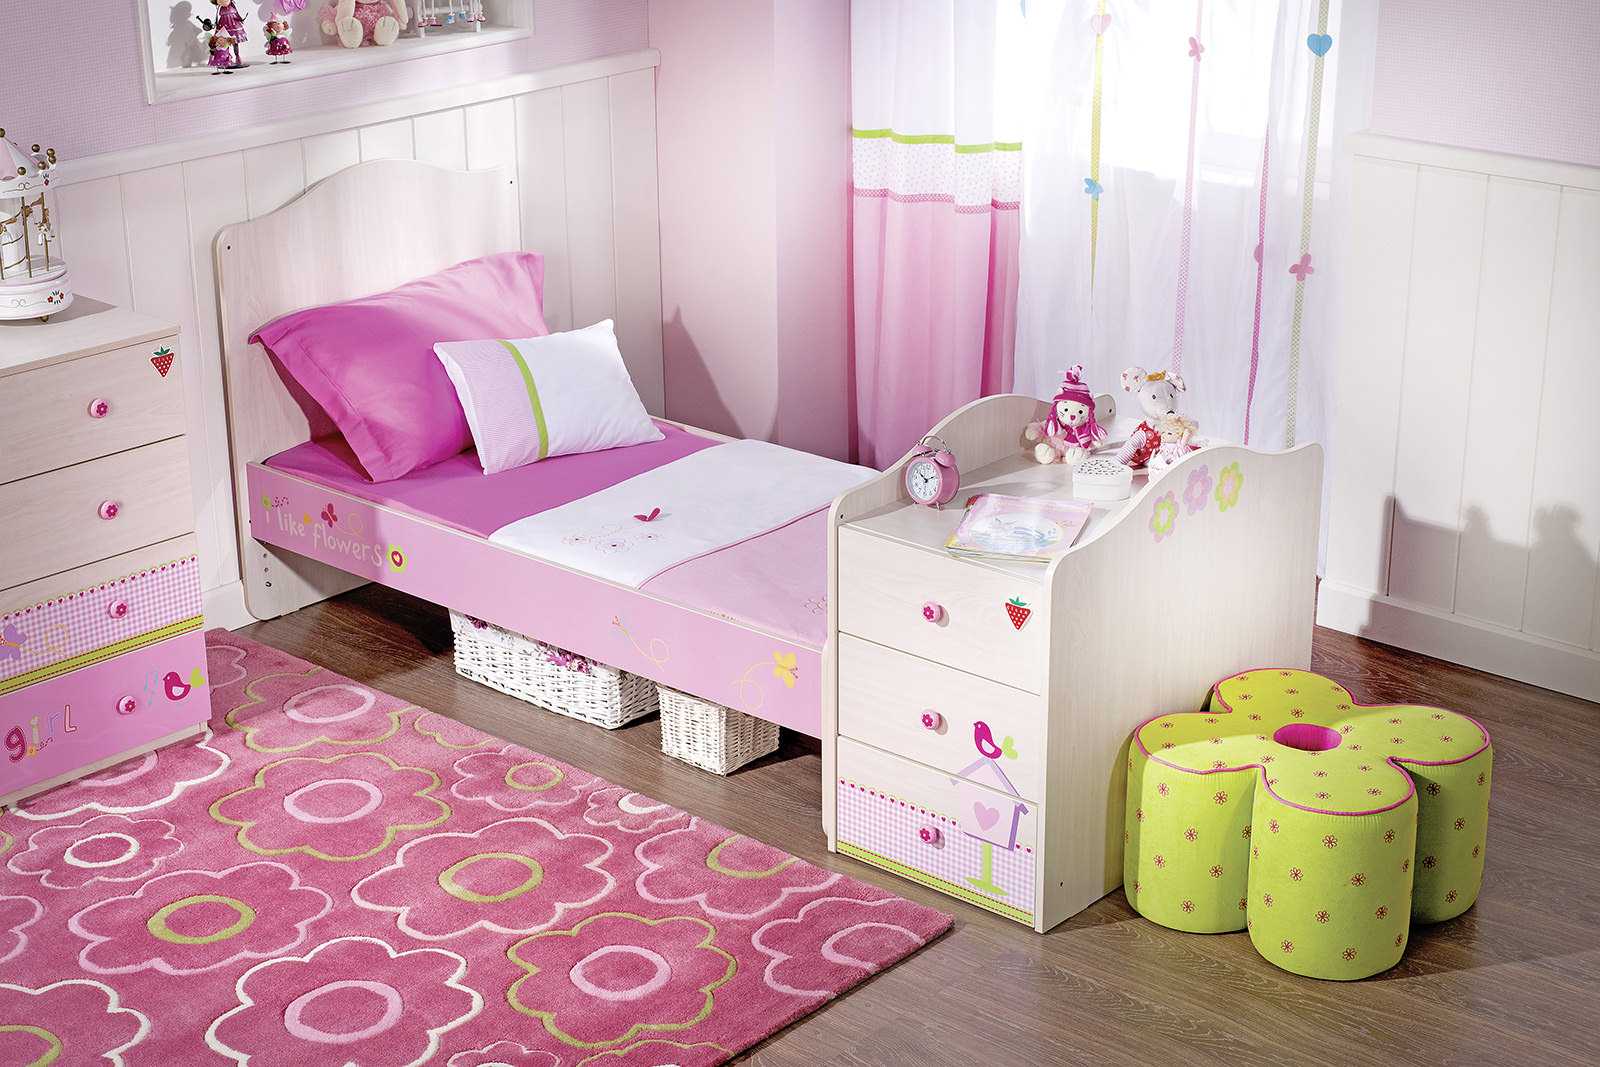 مزيج من اللون الوردي الداكن في تصميم غرفة المعيشة مع الألوان الأخرى